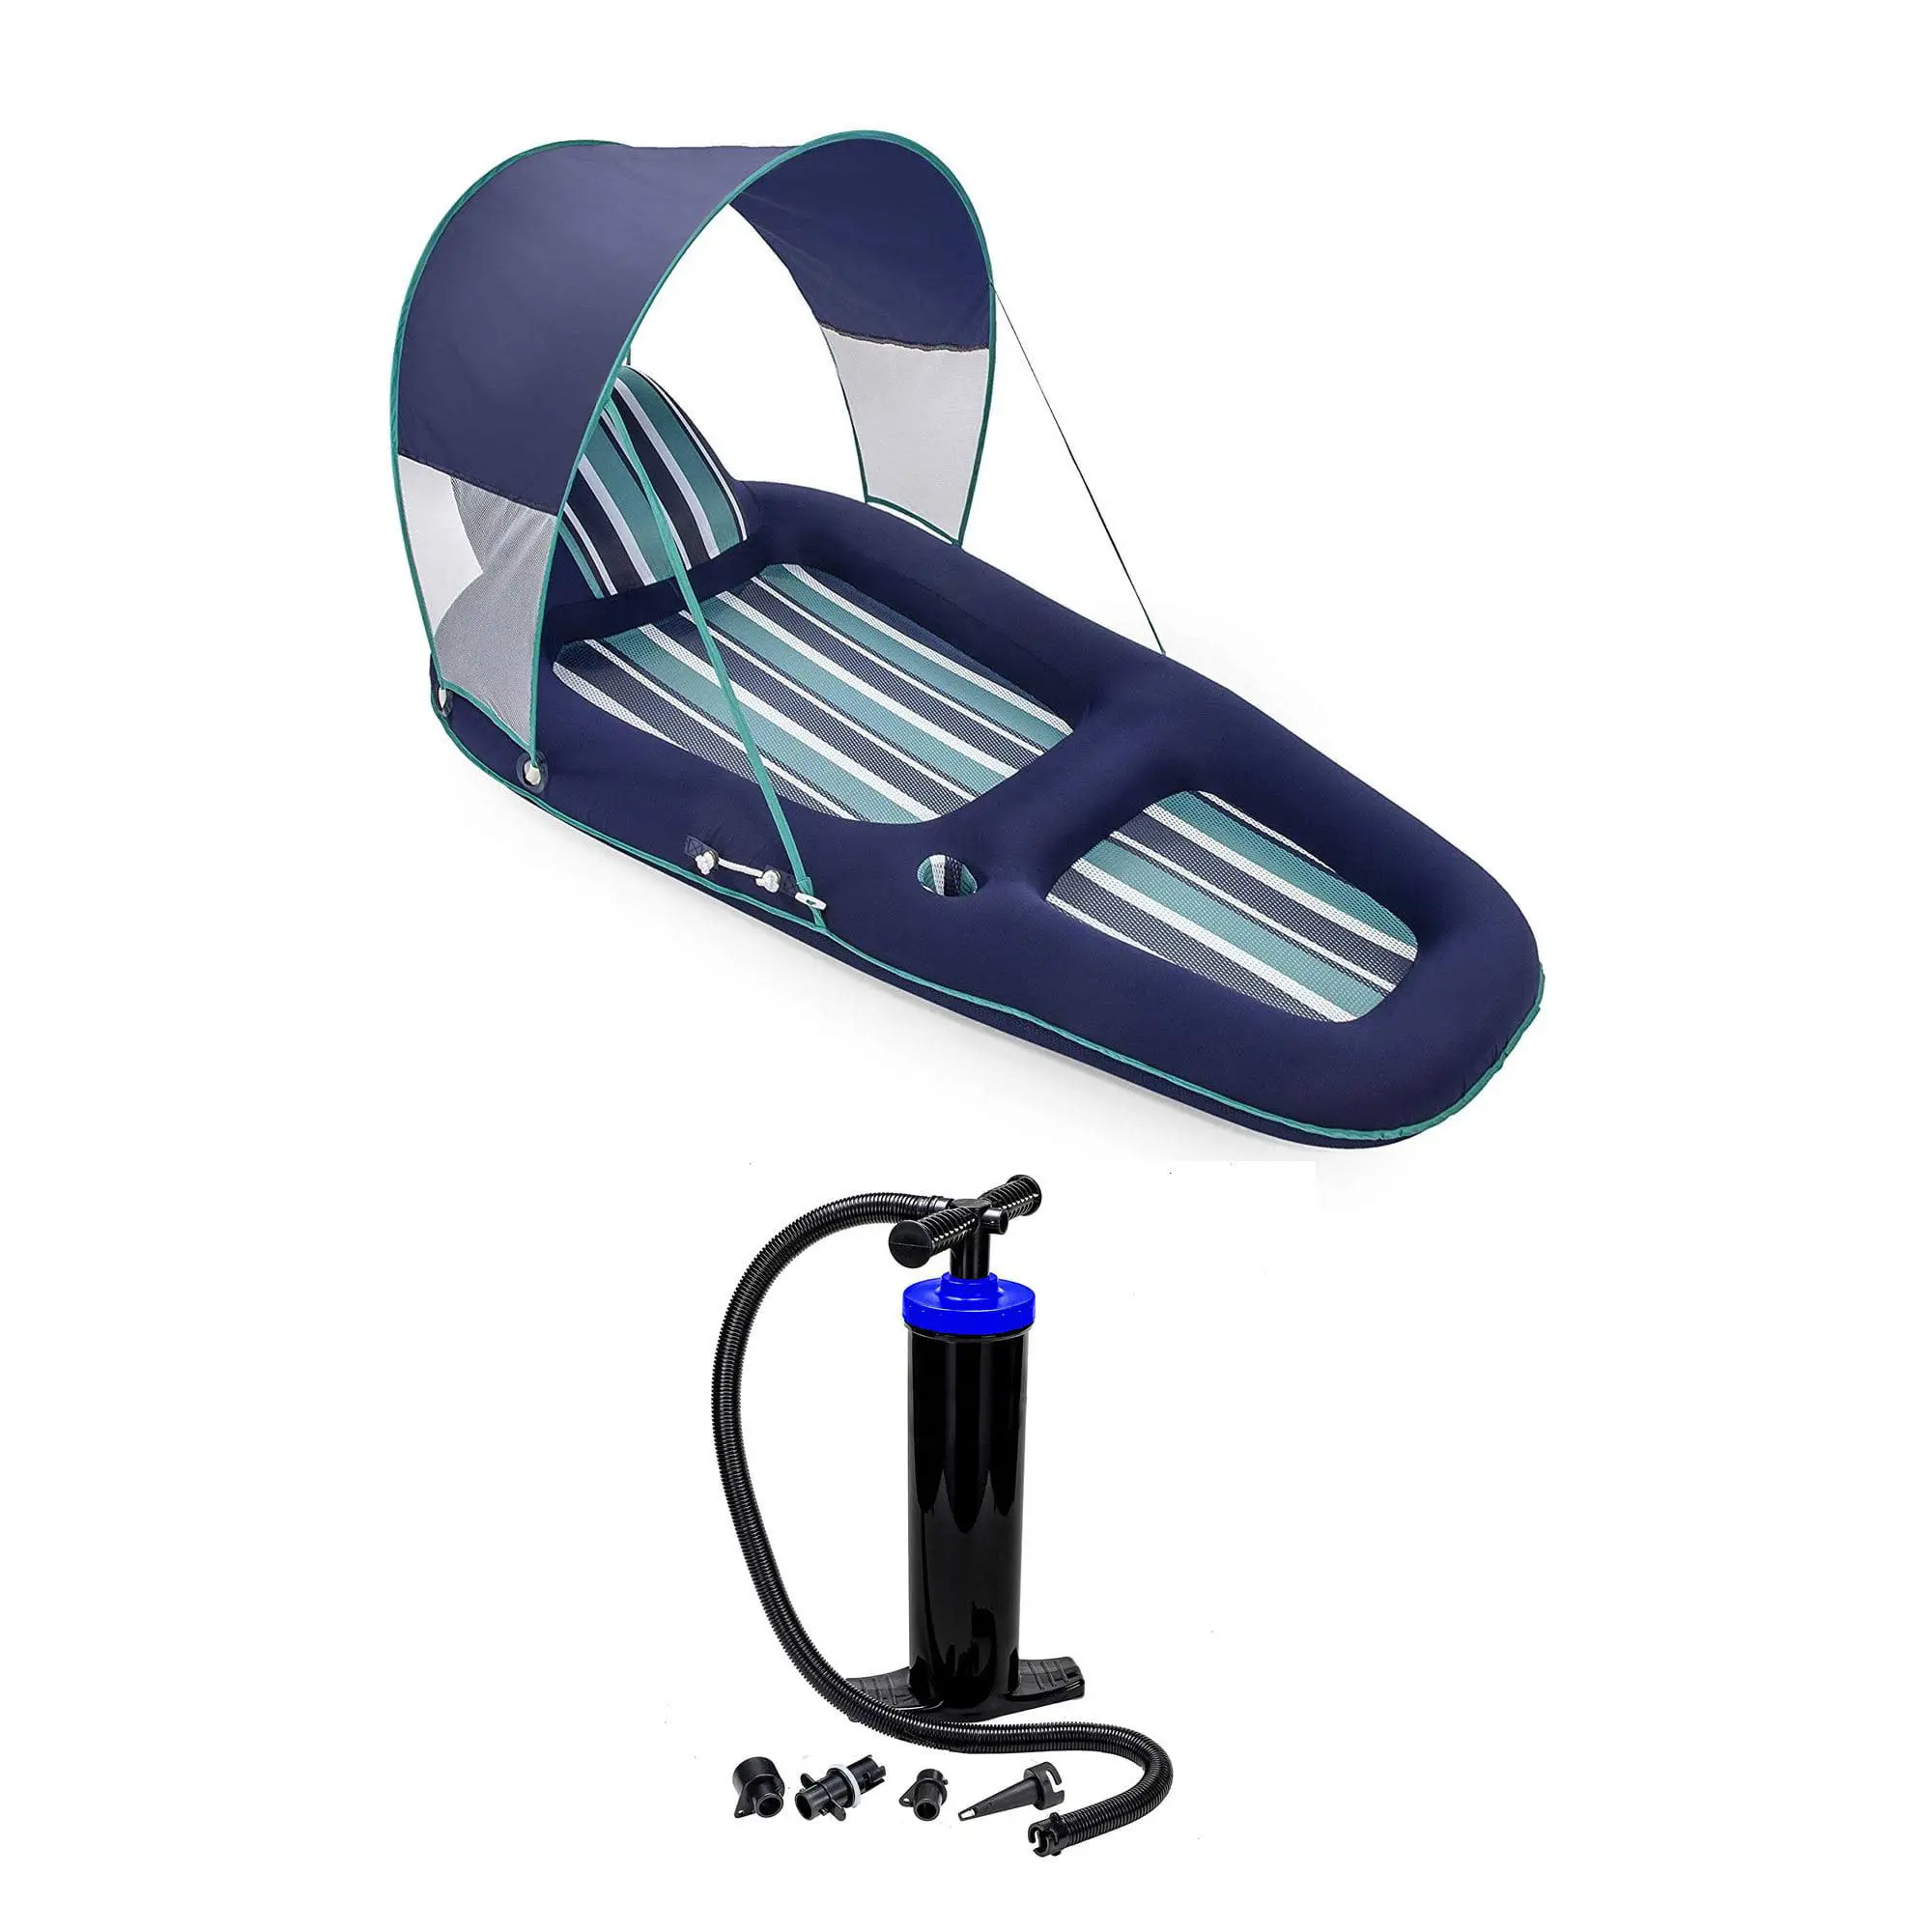 Piscina de Pvc personalizada, cama flotante cómoda, silla flotante inflable para piscina con sombrilla